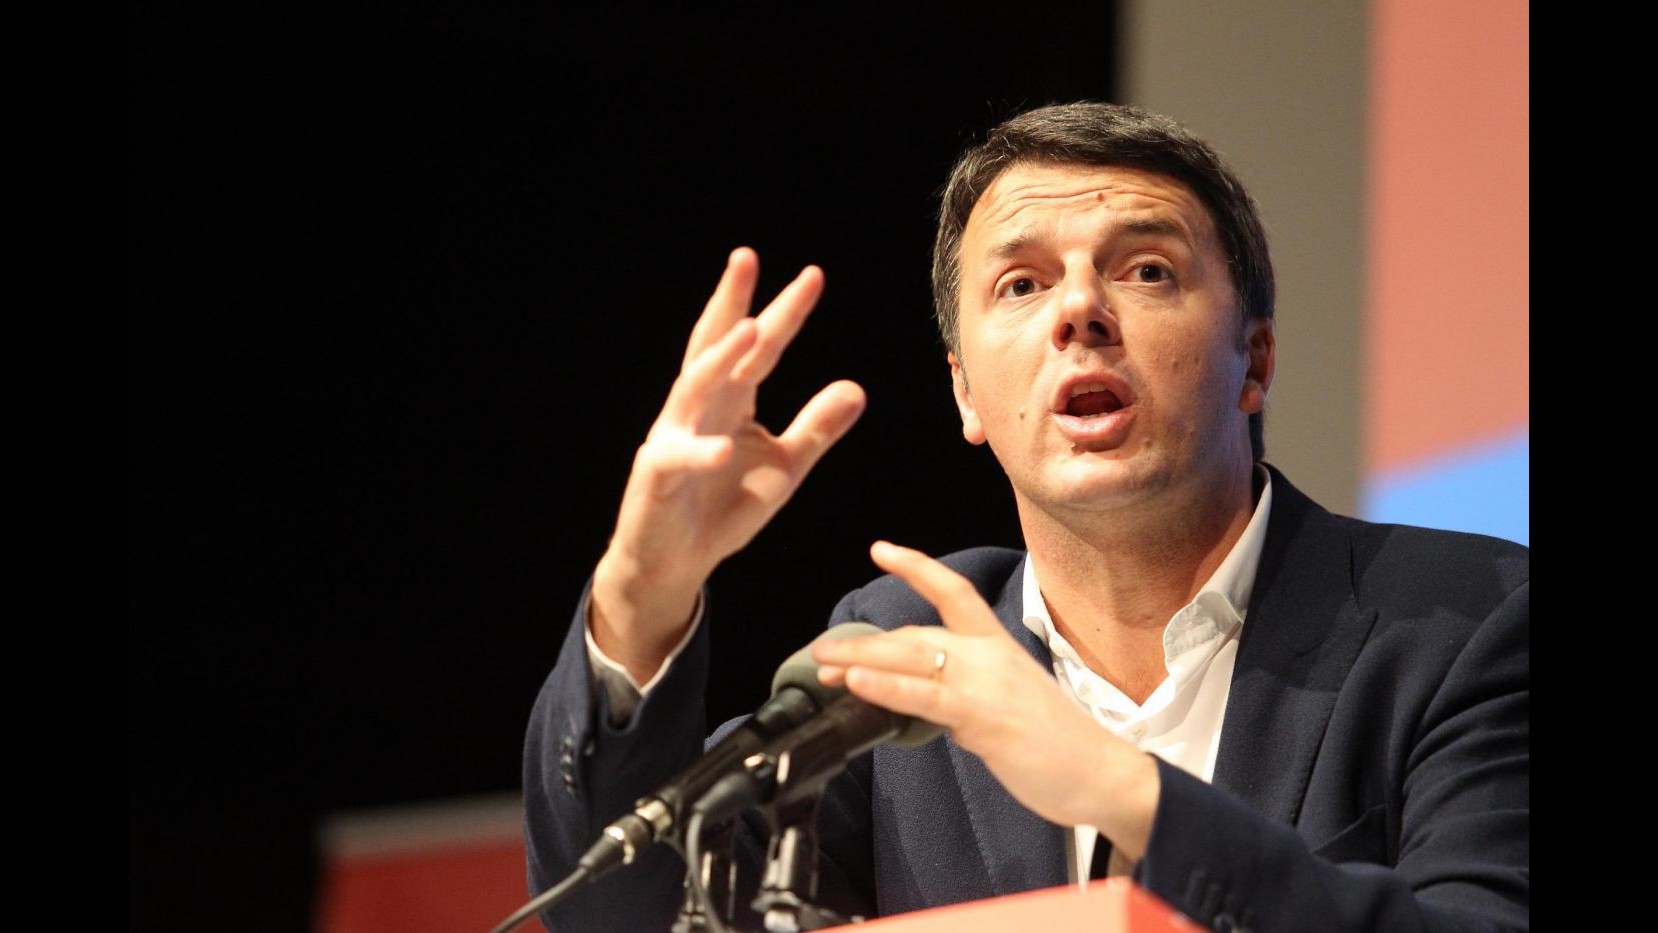 Lavoro, Renzi a direzione Pd: Non si fanno compromessi a tutti i costi